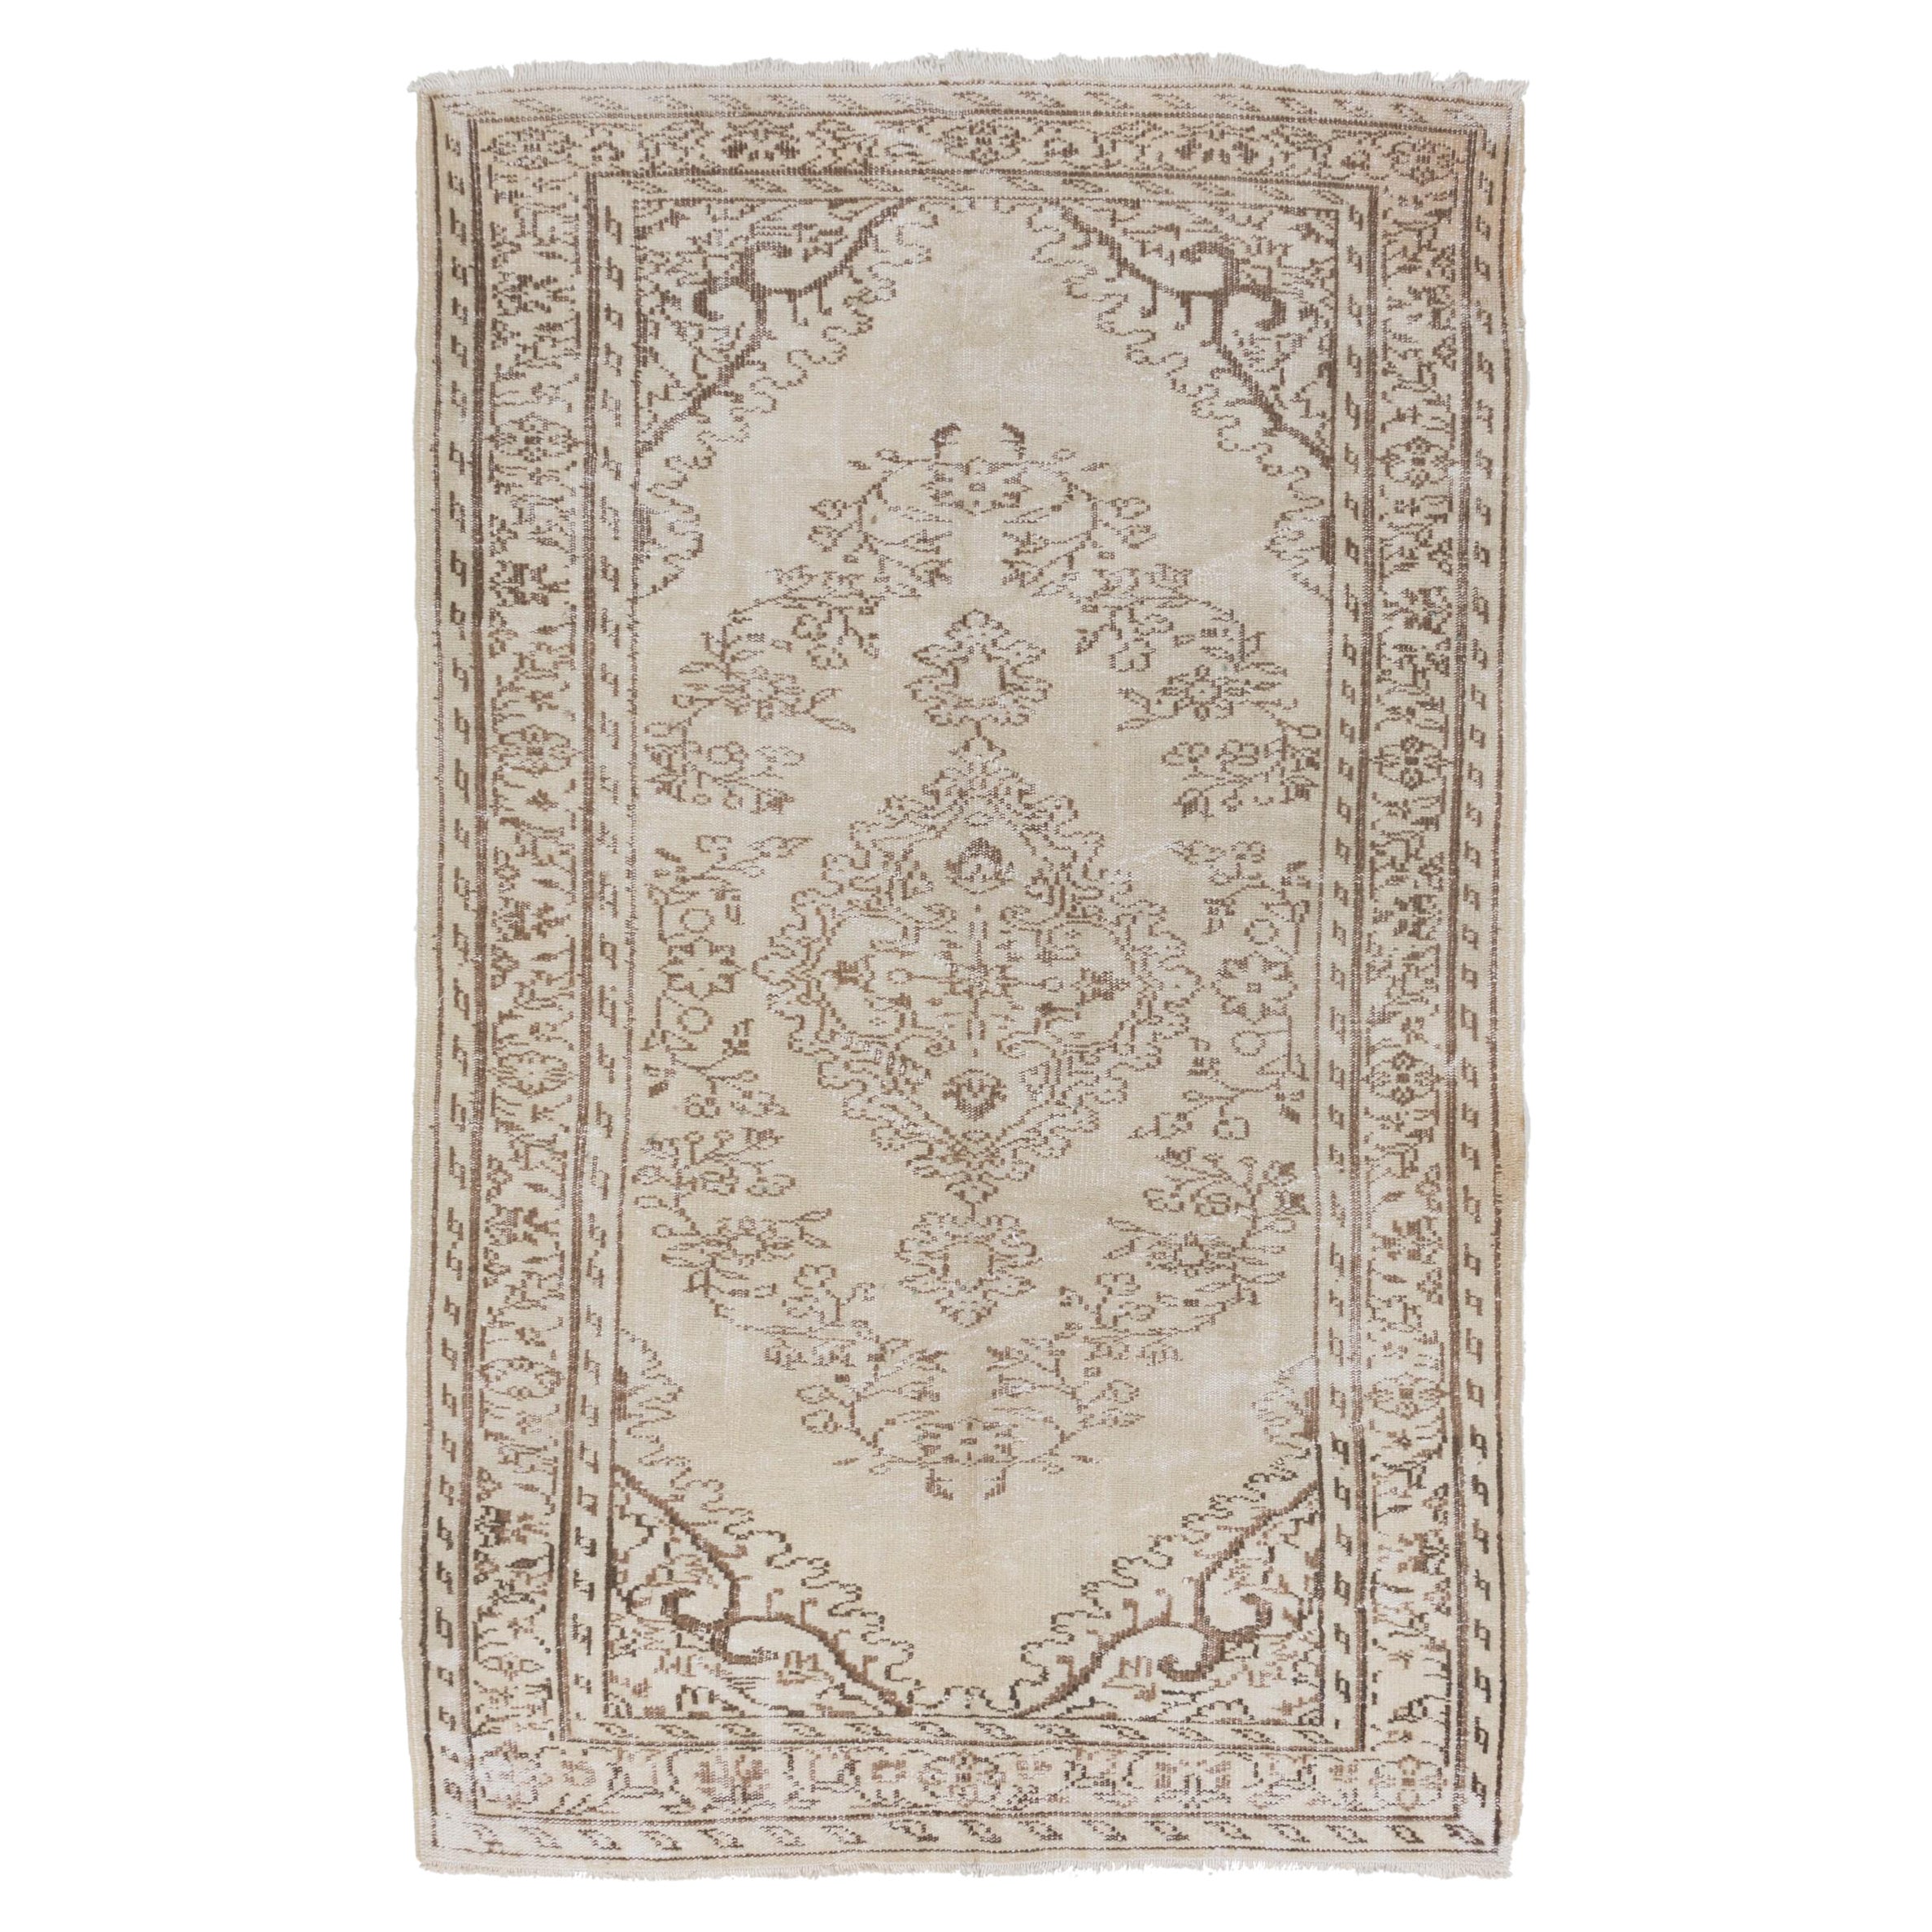 5.3x8.4 ft Vintage Anatolian Oushak Rug, Beige Handmade Carpet, Floor Covering For Sale